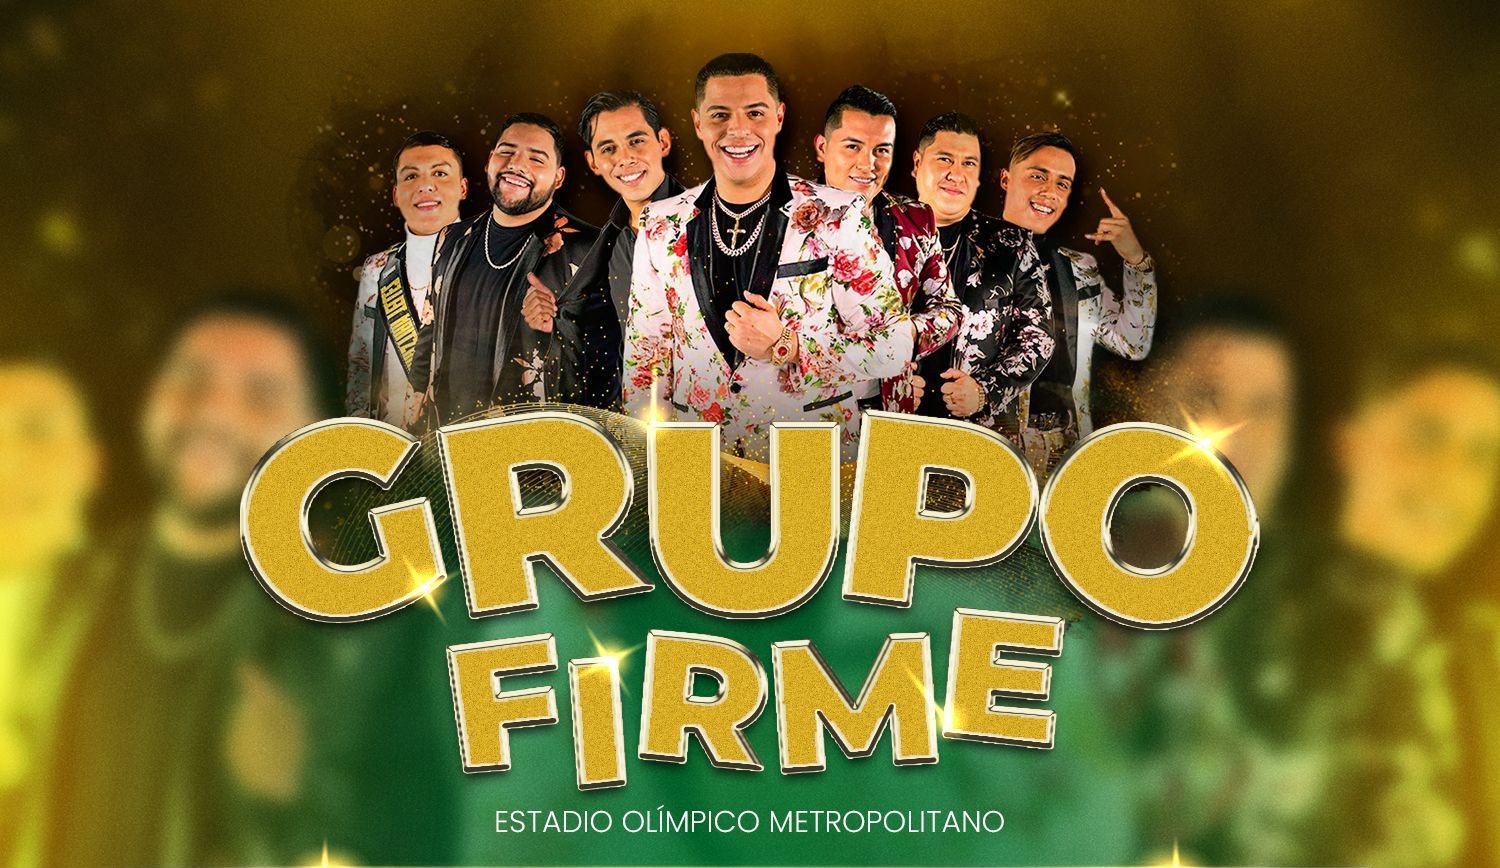 Confirman concierto de Grupo Firme en San Pedro Sula el lunes 24 de julio en el Estadio Olímpico